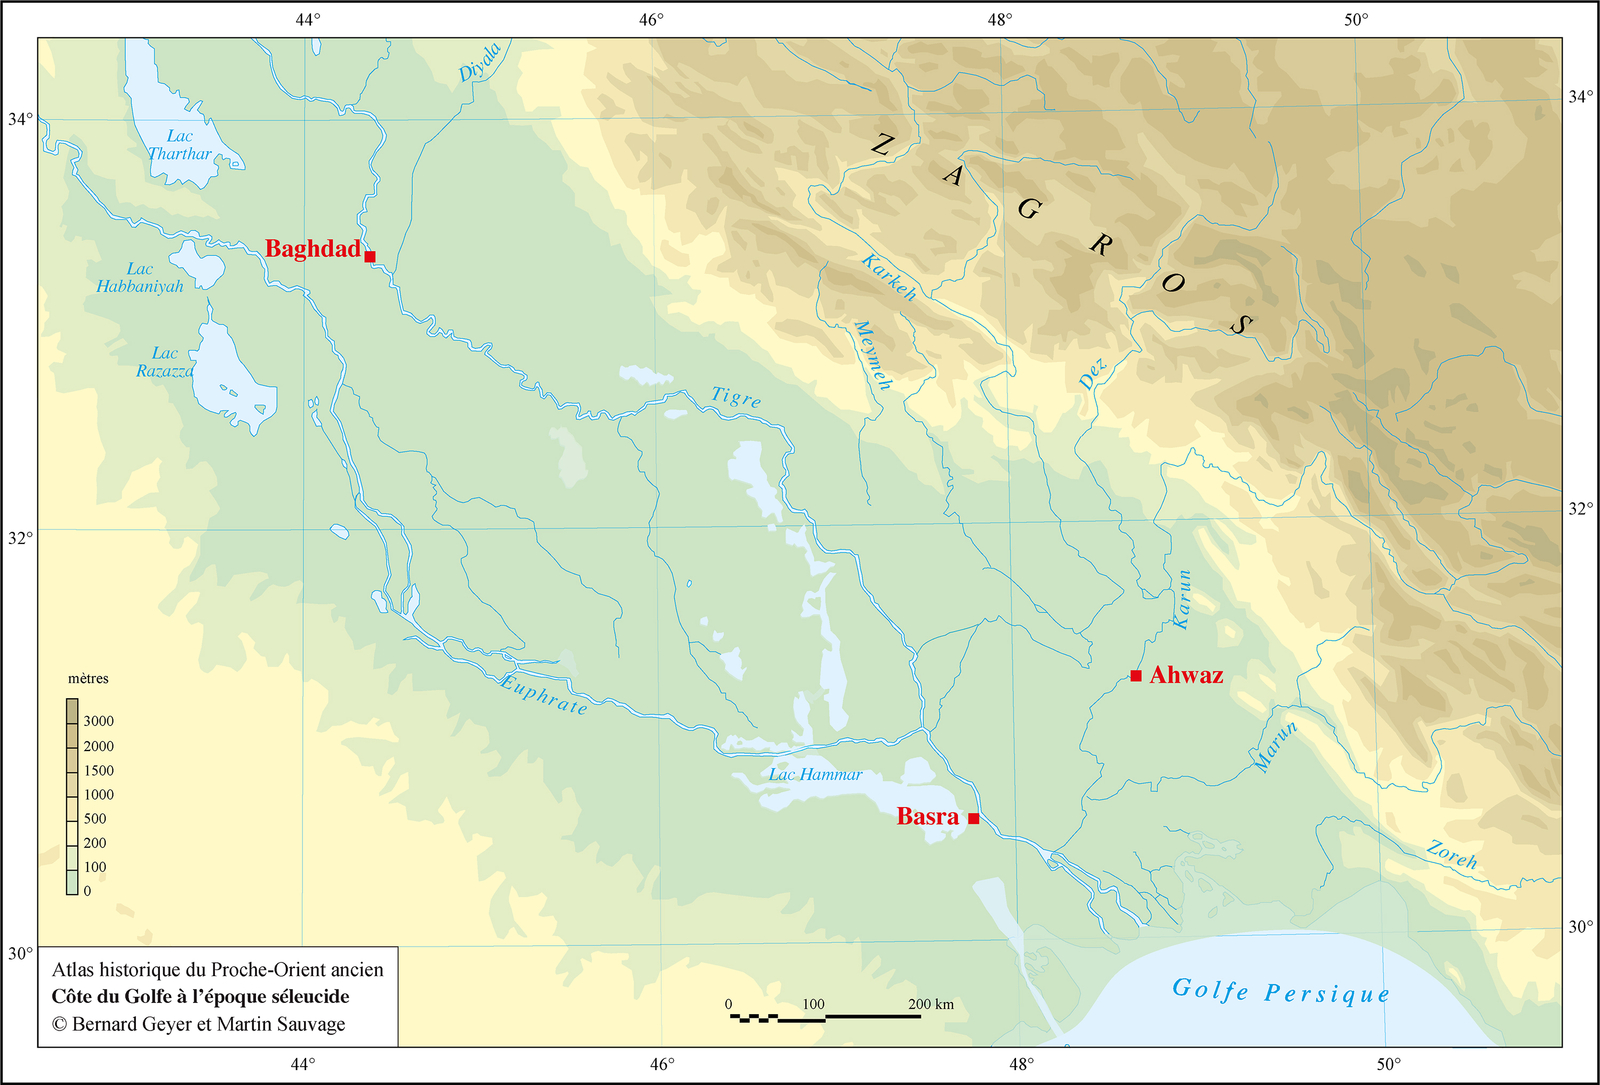 Période séleucide (305-141 av. J.-C)